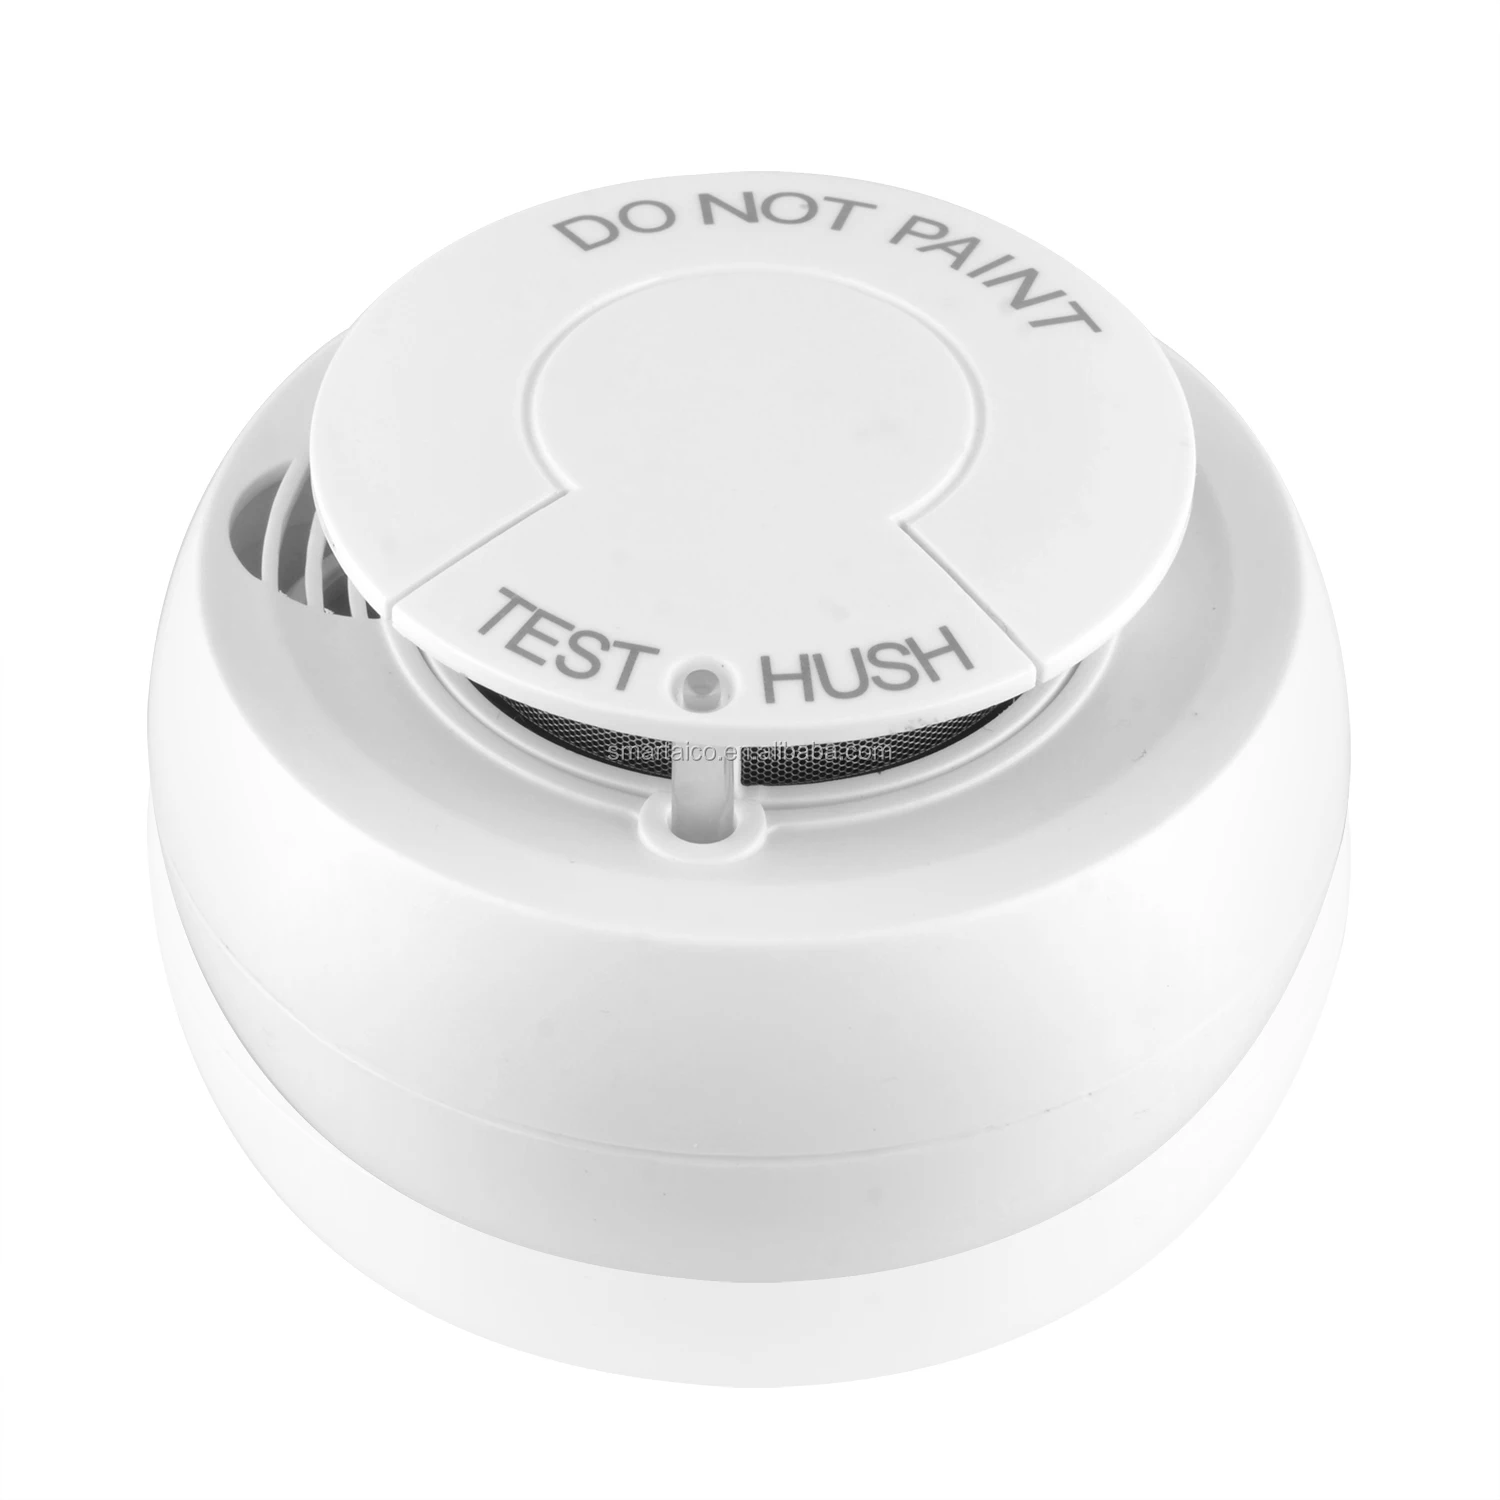 Беспроводные дымовые датчики. Hl Smoke sensor-01-WIFI беспроводной датчик дыма. Tuya WIFI Smoke Detector. Противопожарный датчик на батарейках. Пожарные датчики дымовые беспроводные автономные купить.